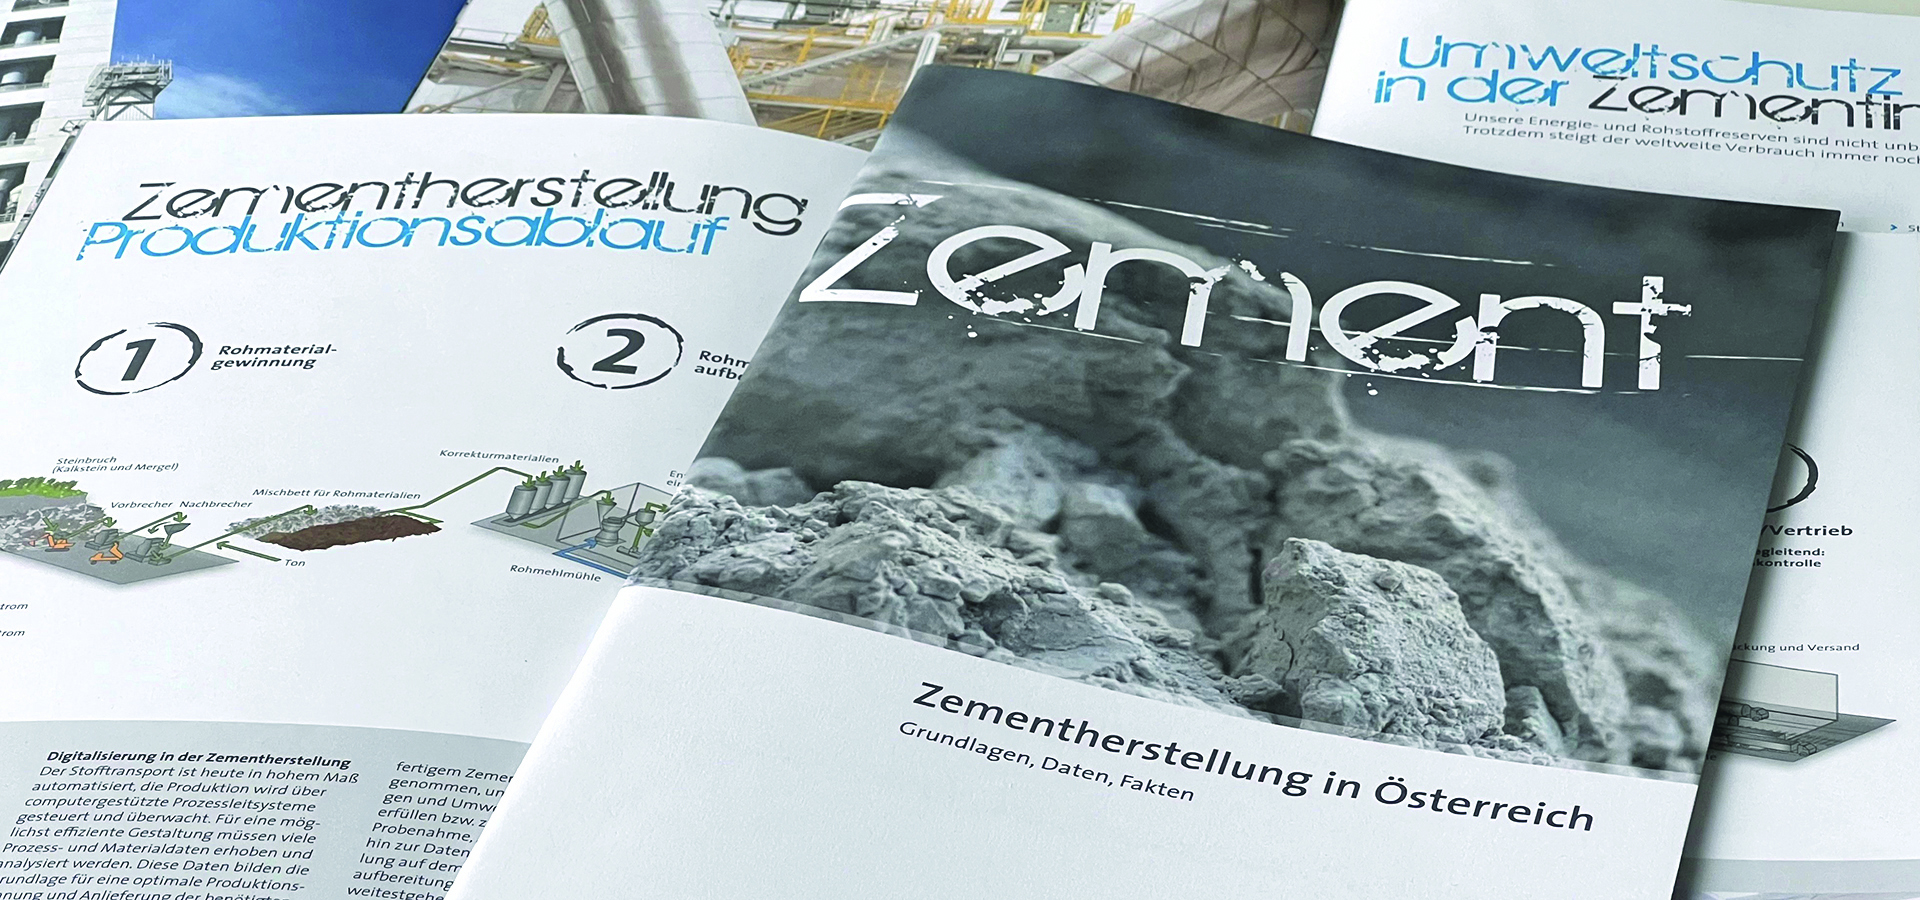 Neuauflage: Zementherstellung in Österreich